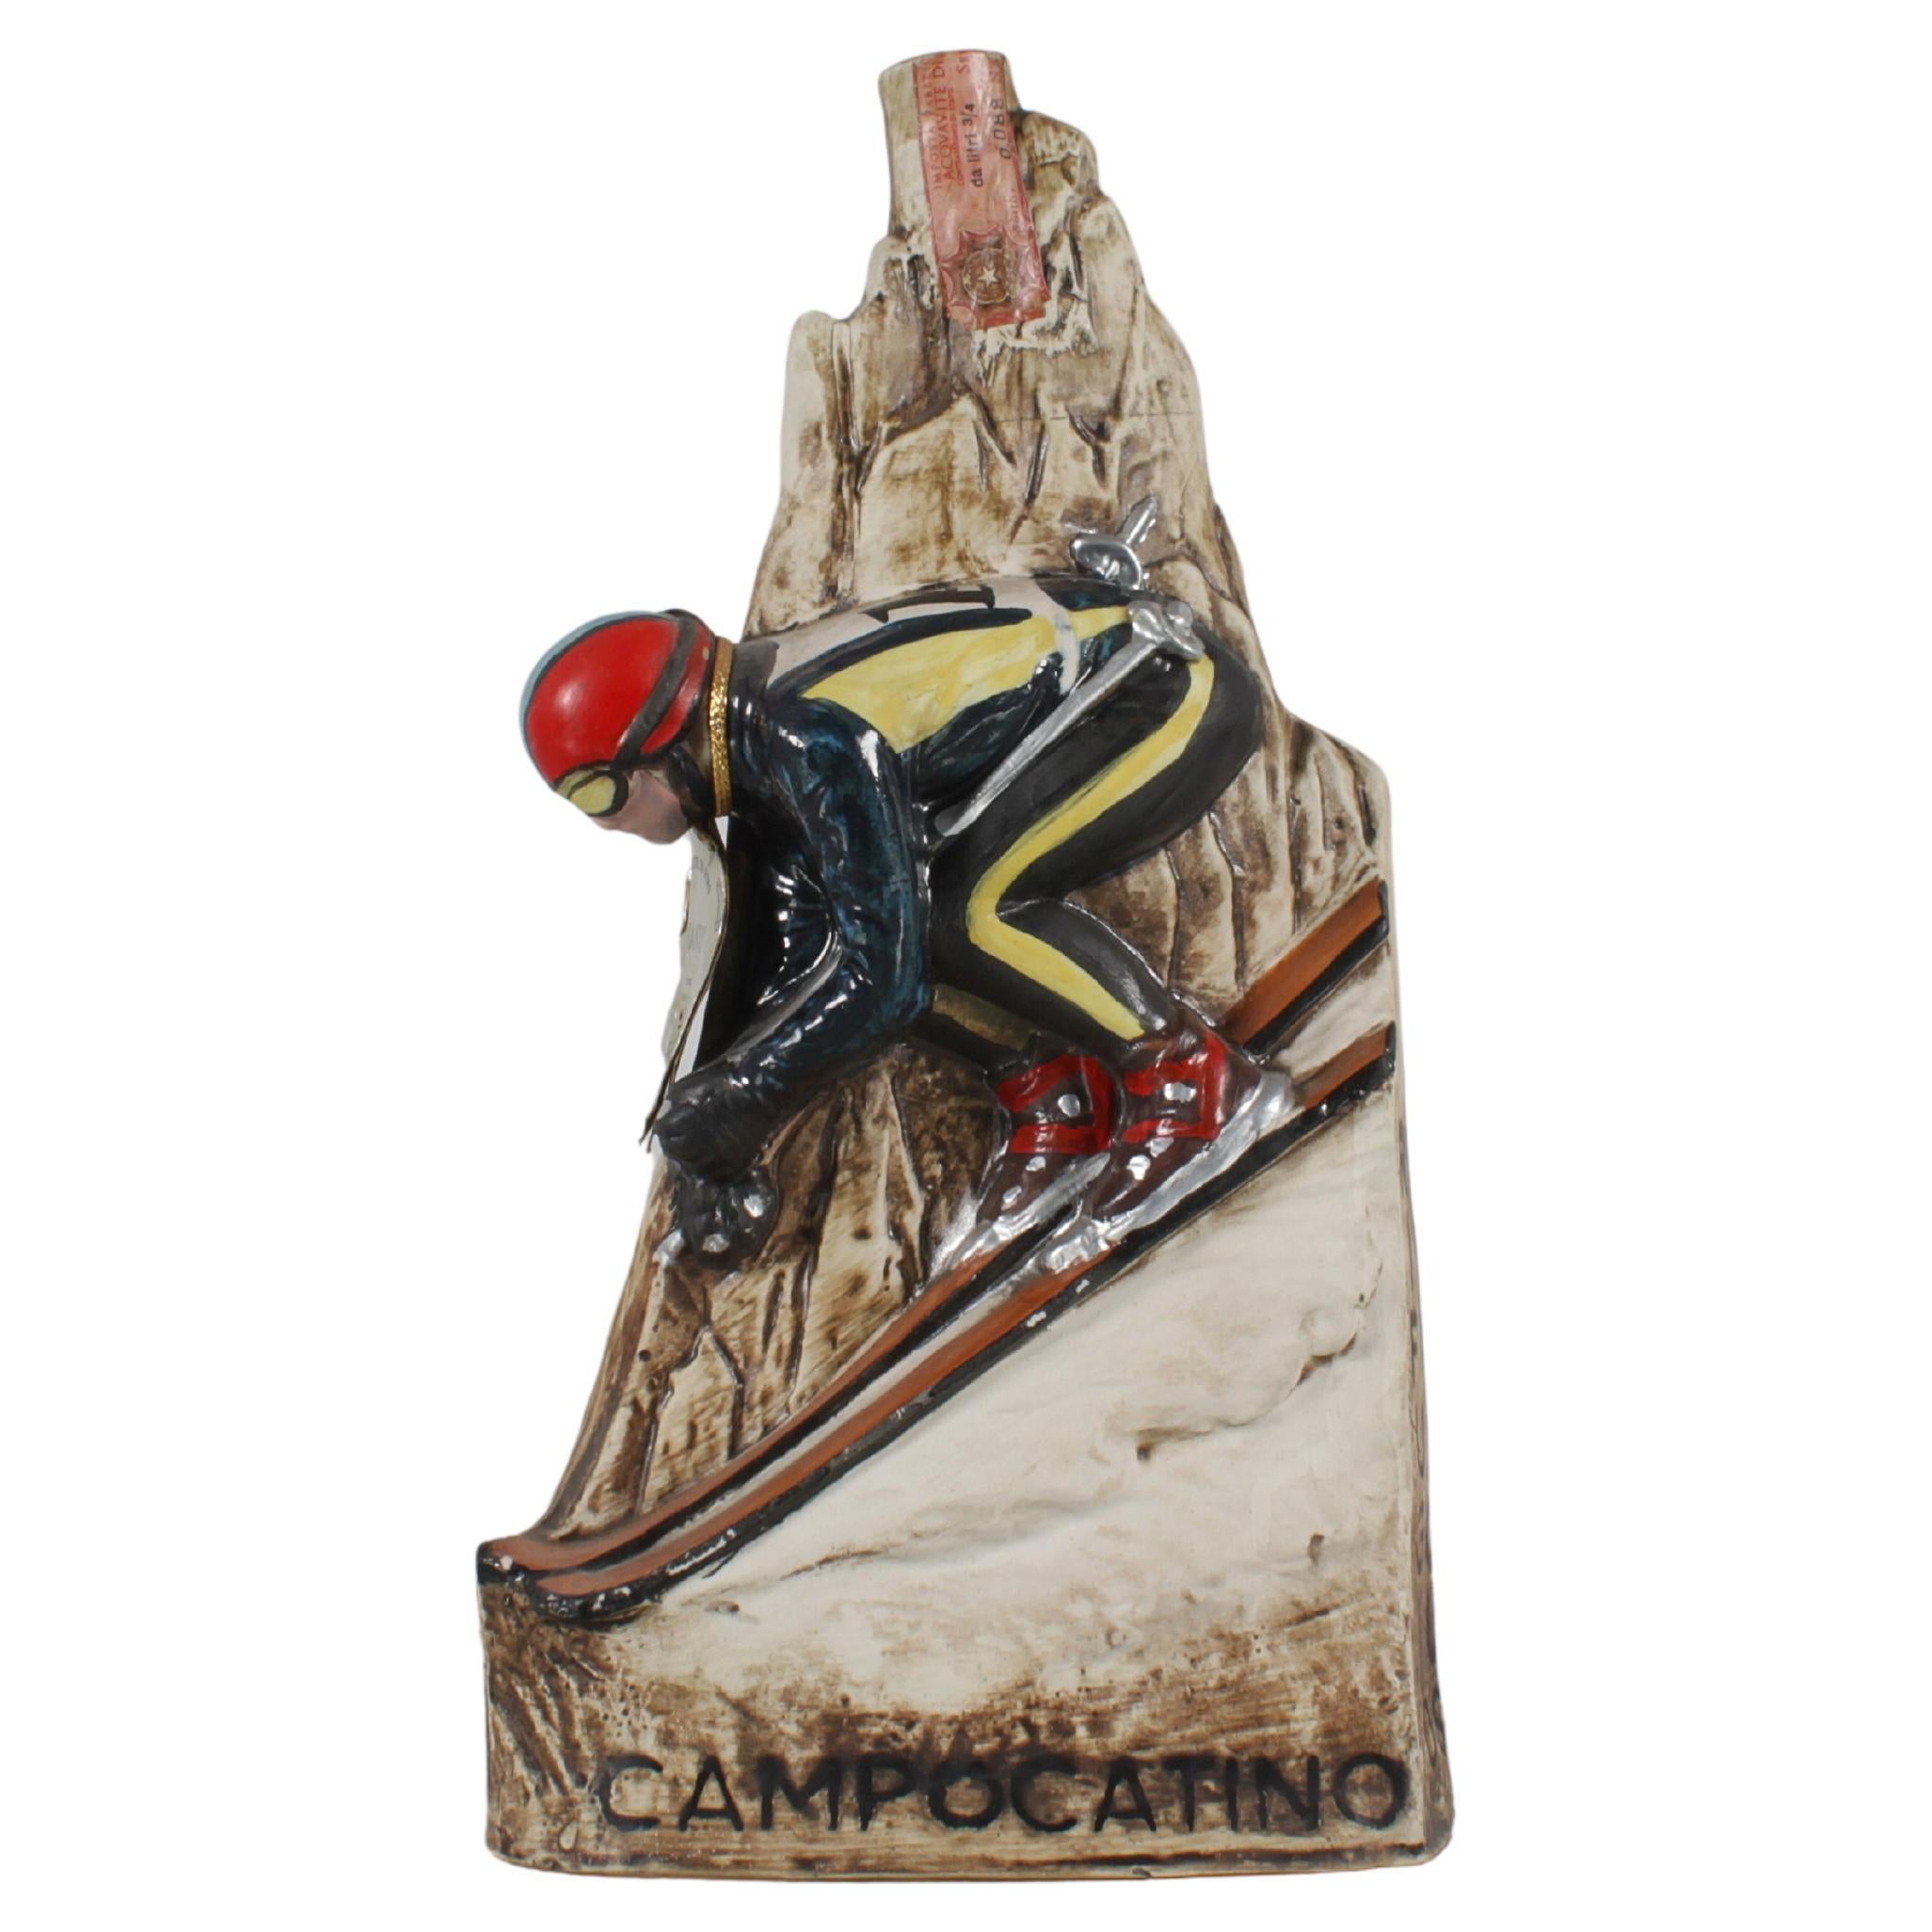 Seltene Flasche - handgefertigte und bemalte Werbeskulptur aus Keramik, die einen Skifahrer auf einem Berggipfel darstellt. Brandy - 